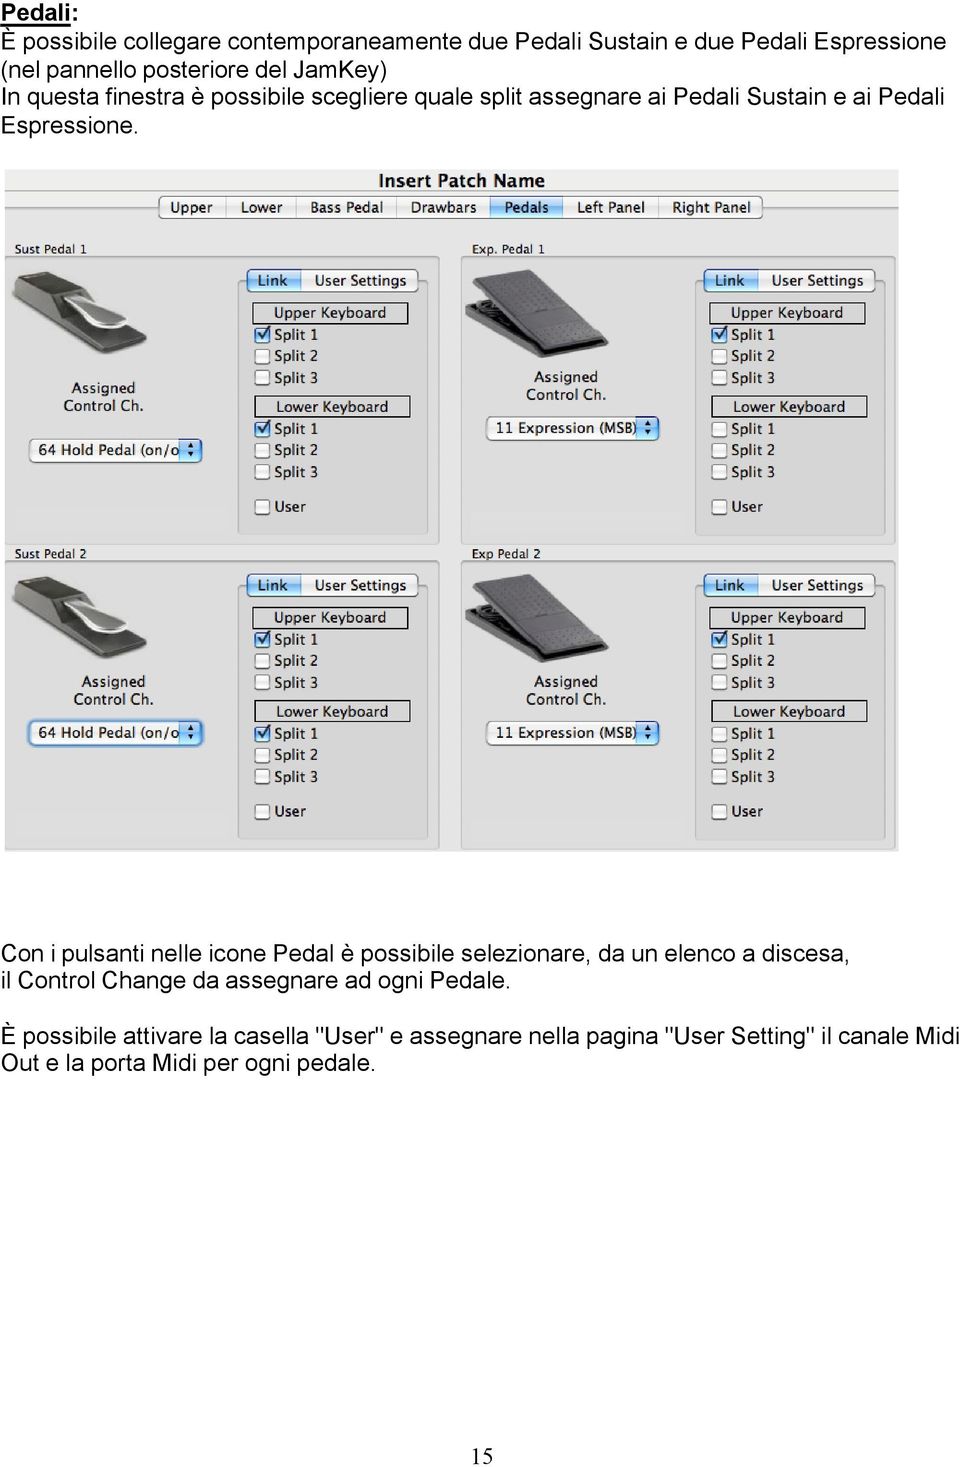 Con i pulsanti nelle icone Pedal è possibile selezionare, da un elenco a discesa, il Control Change da assegnare ad ogni